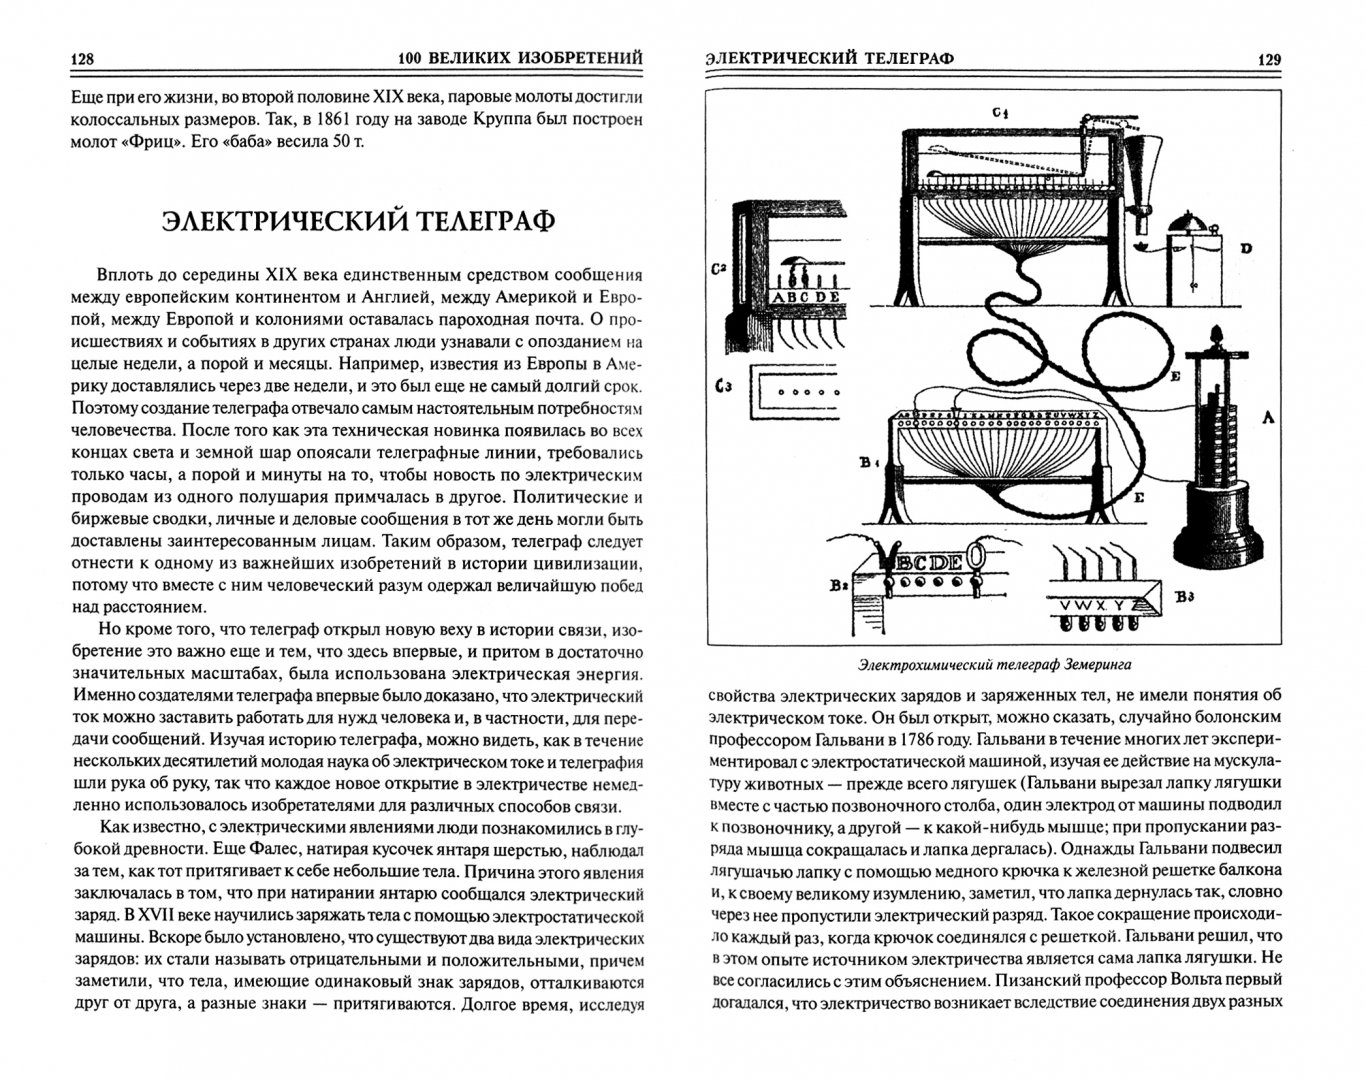 Иллюстрация 1 из 6 для 100 великих изобретений - Константин Рыжов | Лабиринт - книги. Источник: Лабиринт